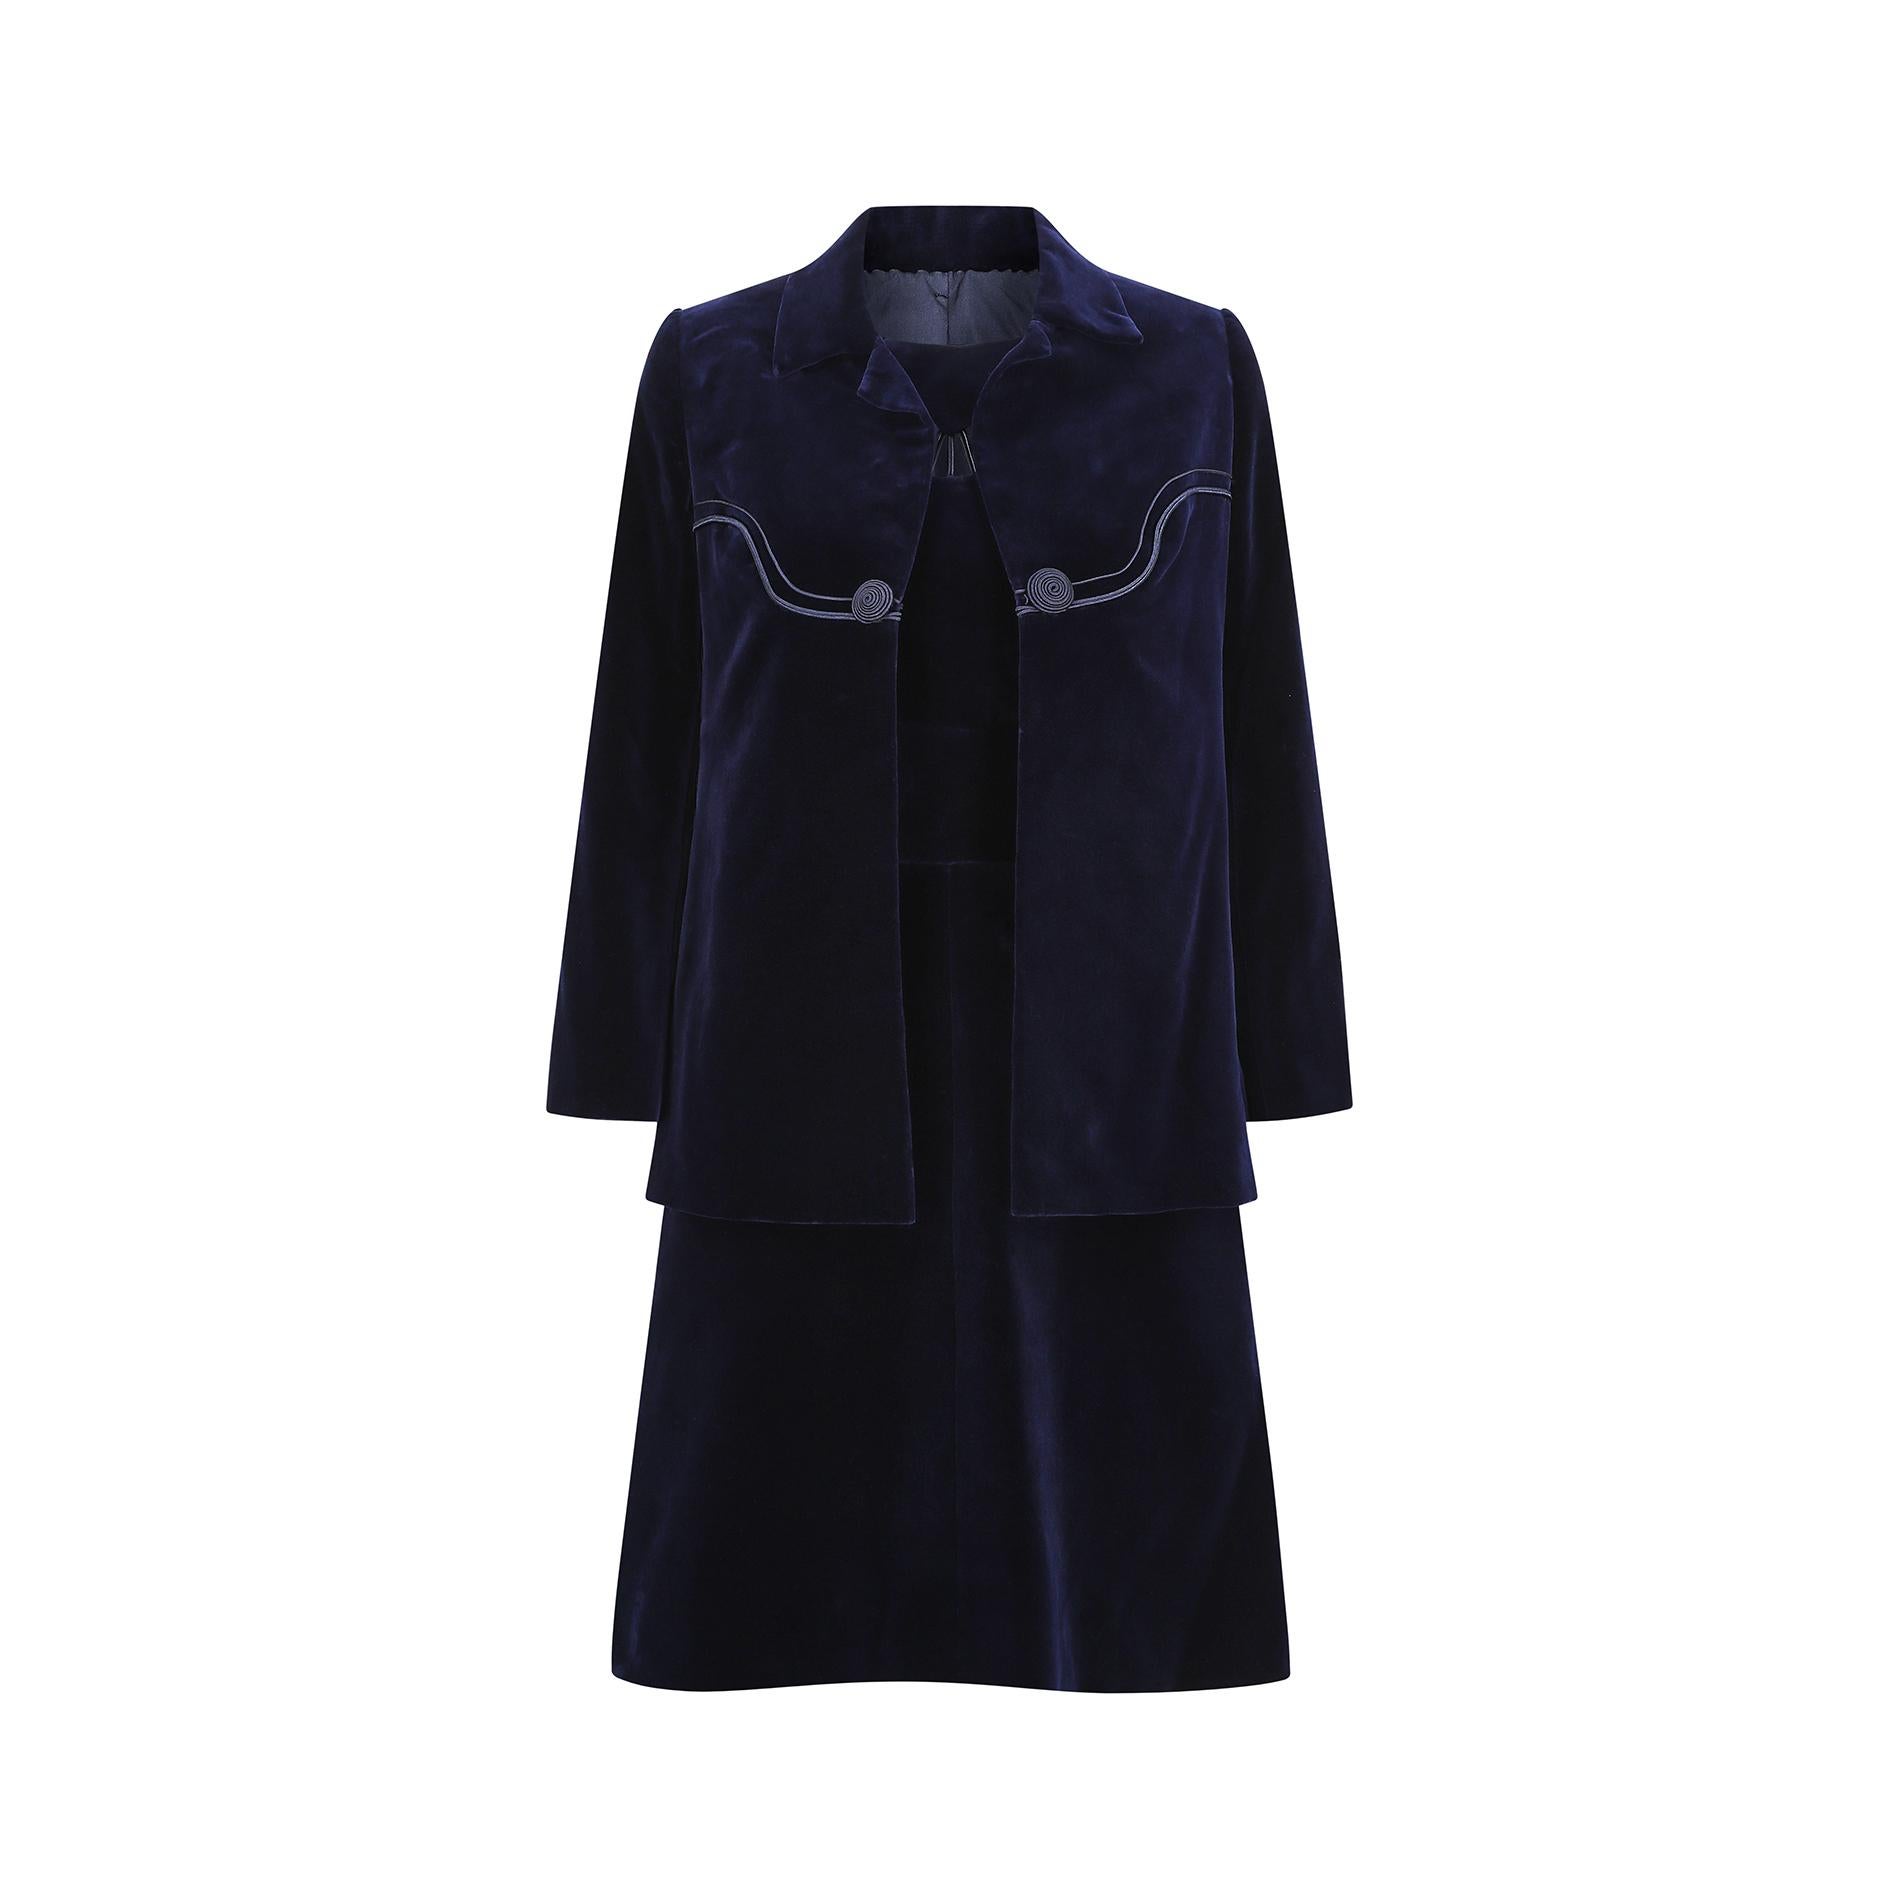 Ce tailleur haute couture bleu nuit des années 1960 est magnifiquement confectionné dans un velours luxueusement doux. La robe présente une simple encolure dégagée avec une découpe sur le devant, avec un détail de corde presque semblable à un rayon.